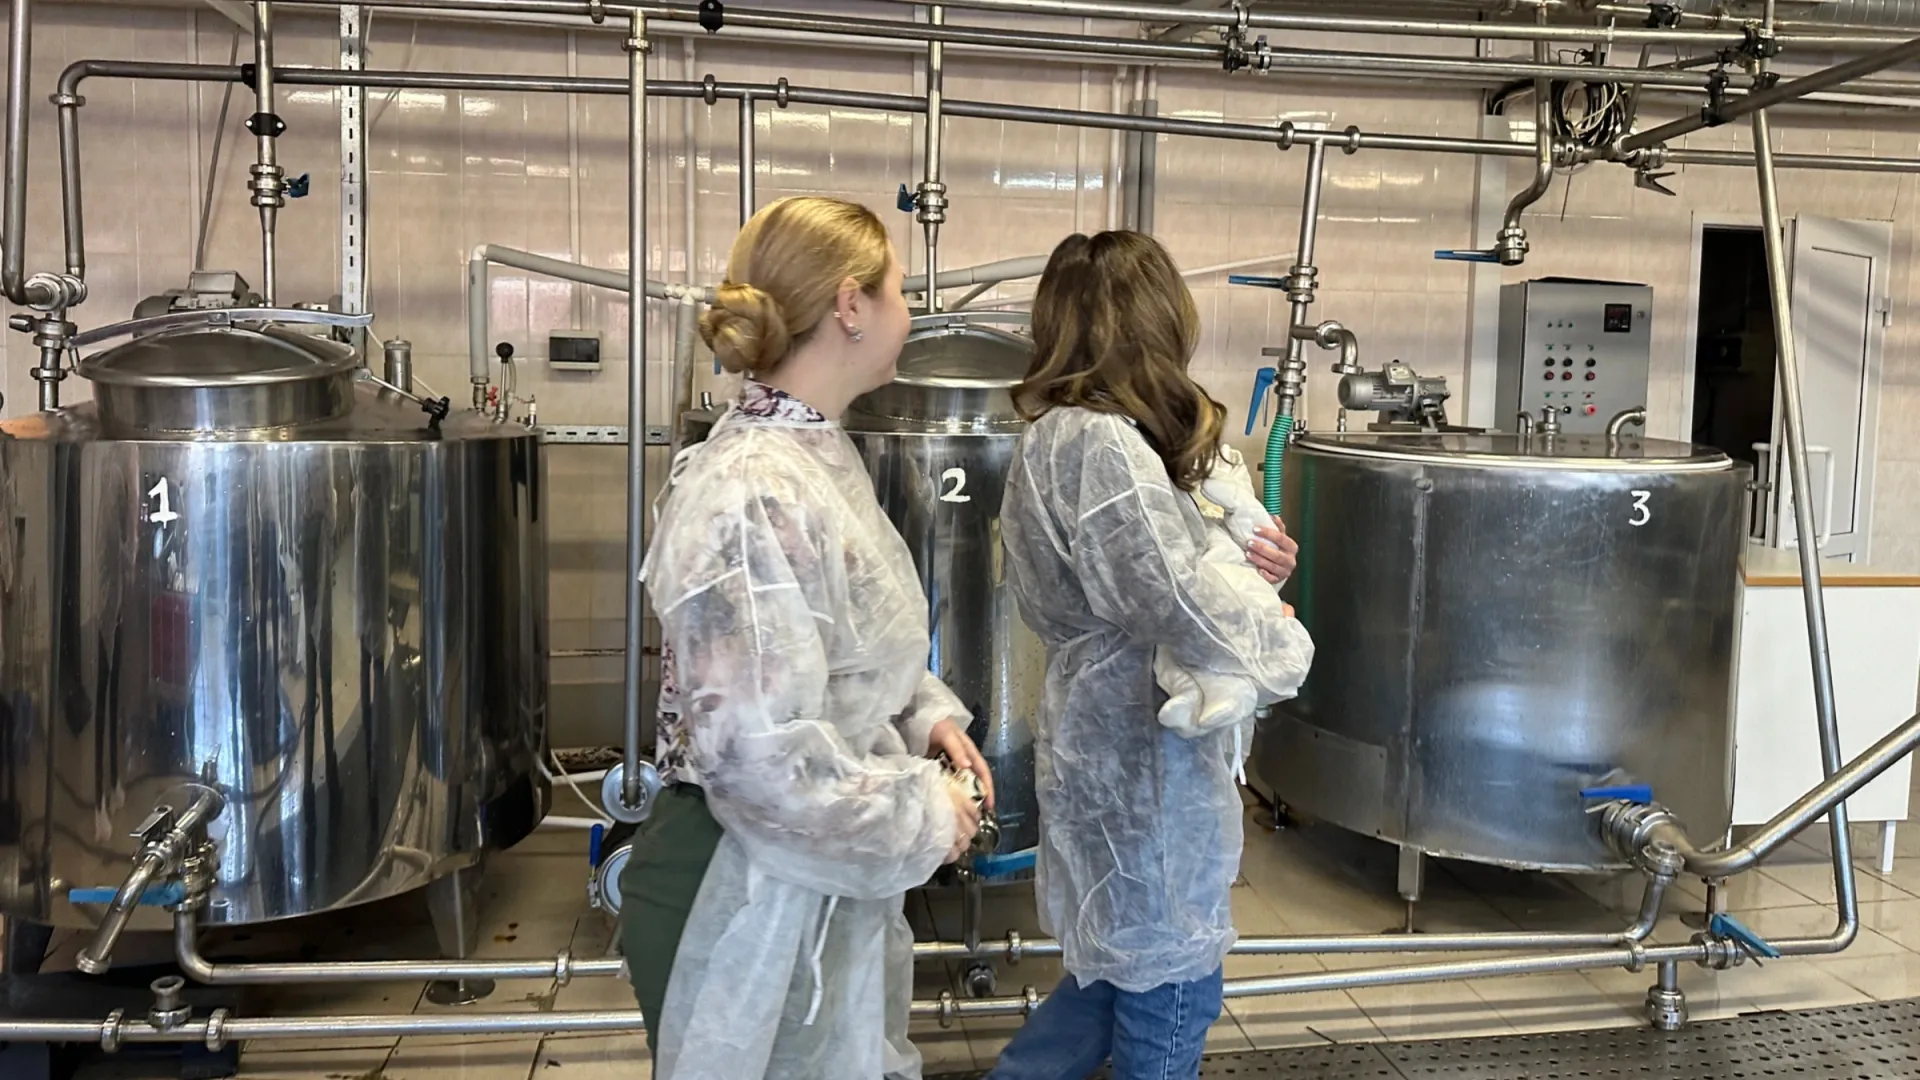 Салехардским женщинам подробно рассказали обо всех этапах производства молочки. Фото: «Ямал-Медиа»